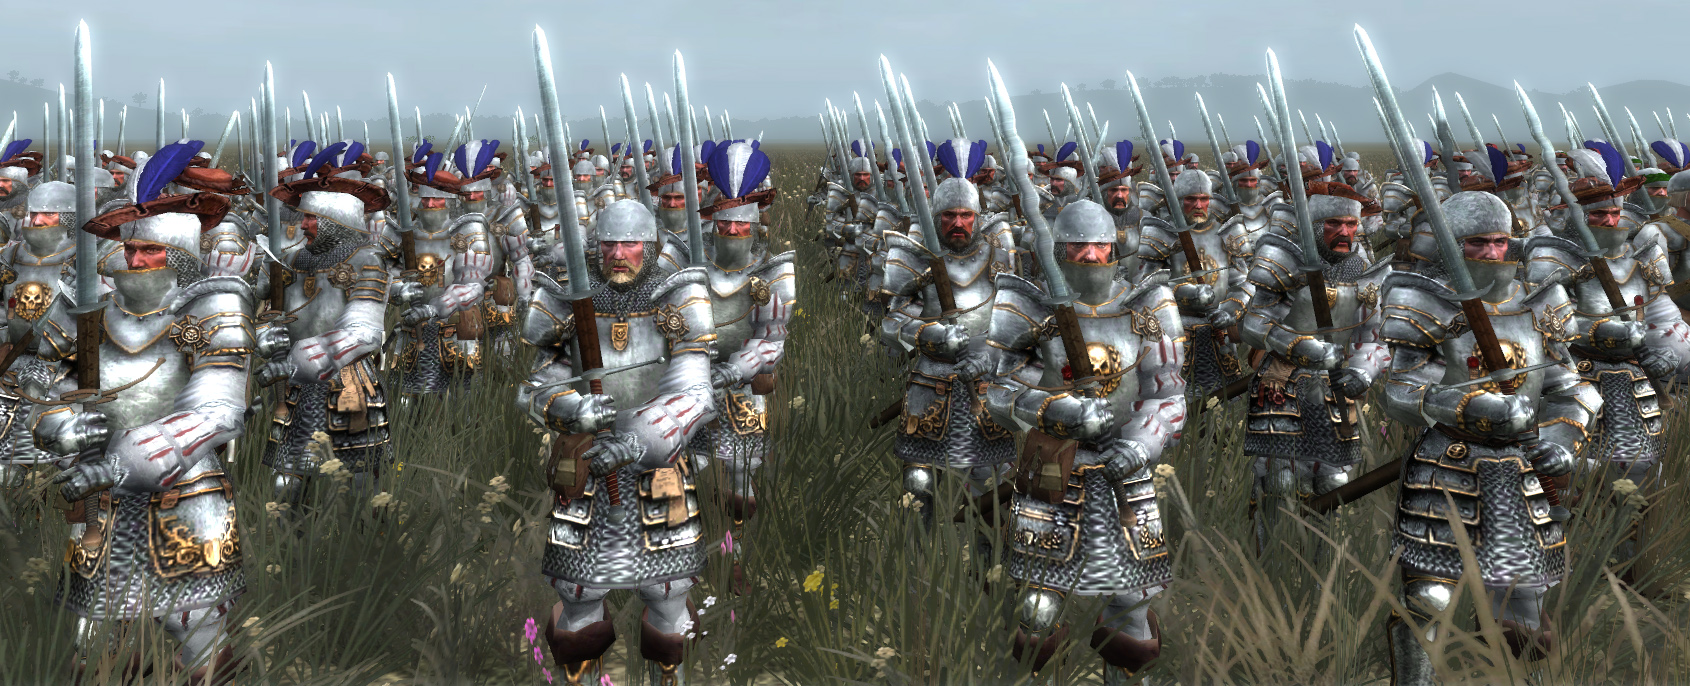 medieval 2 total war best mods